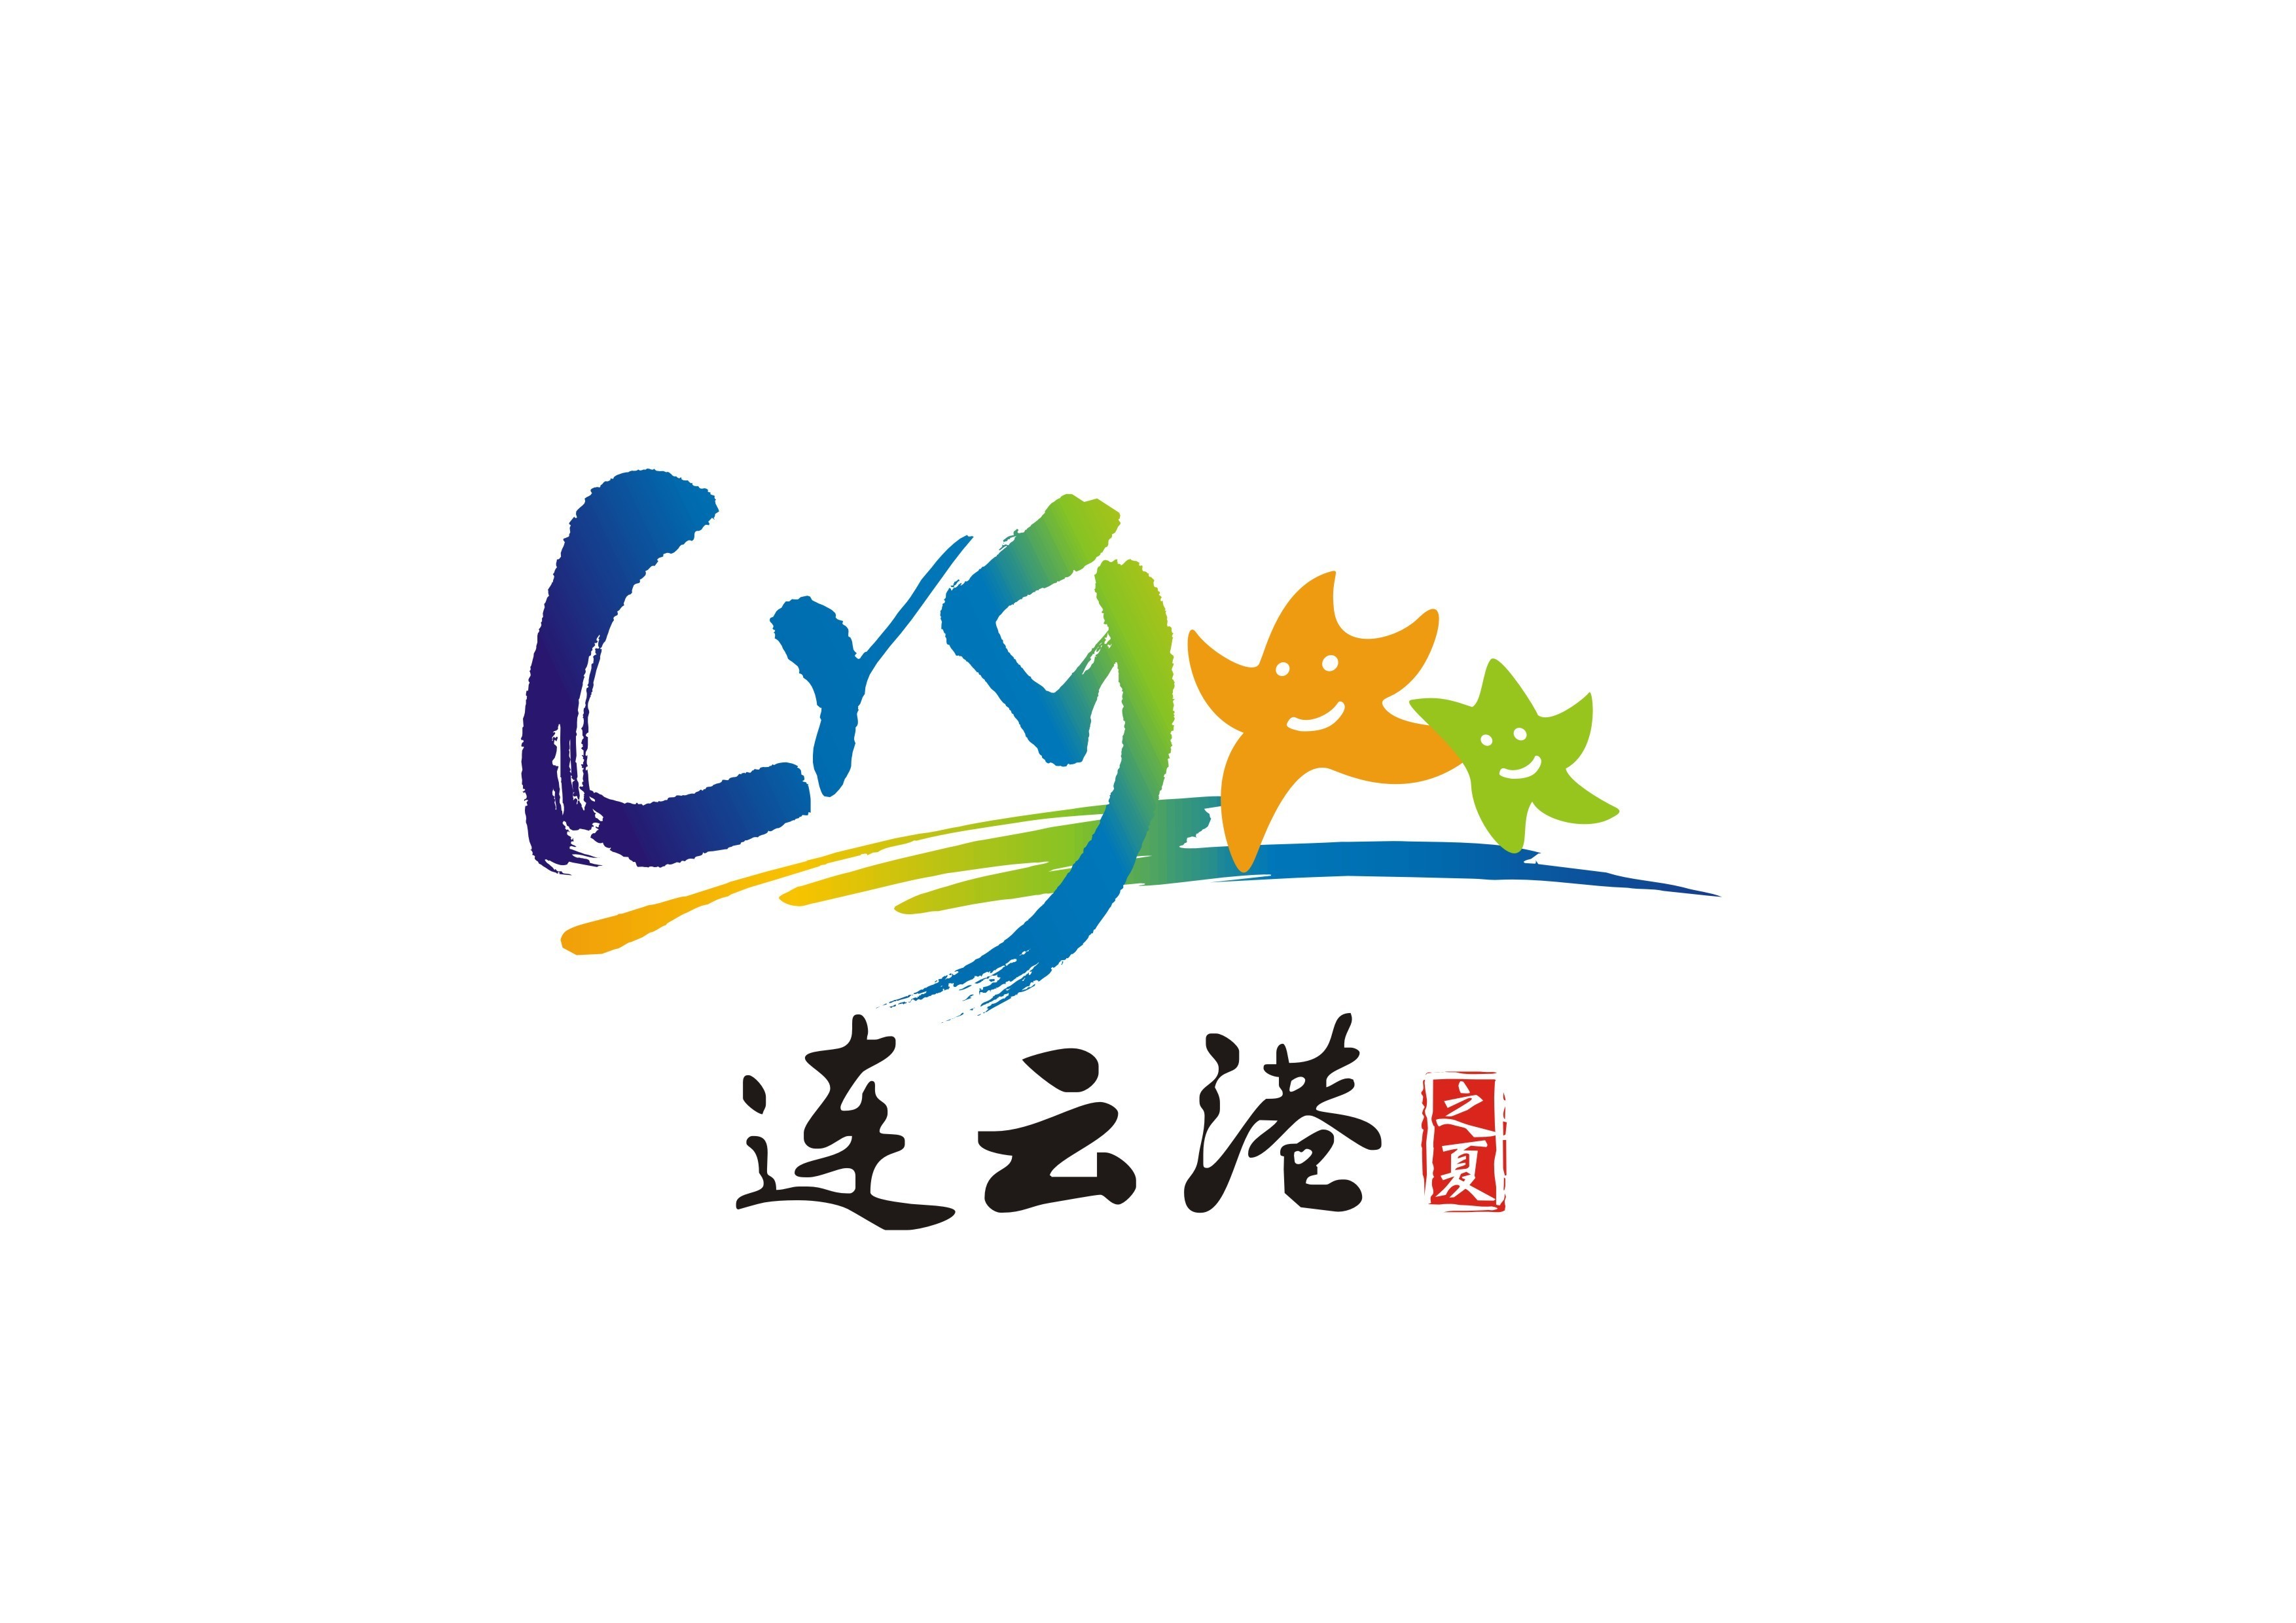 连云港博物馆logo图片